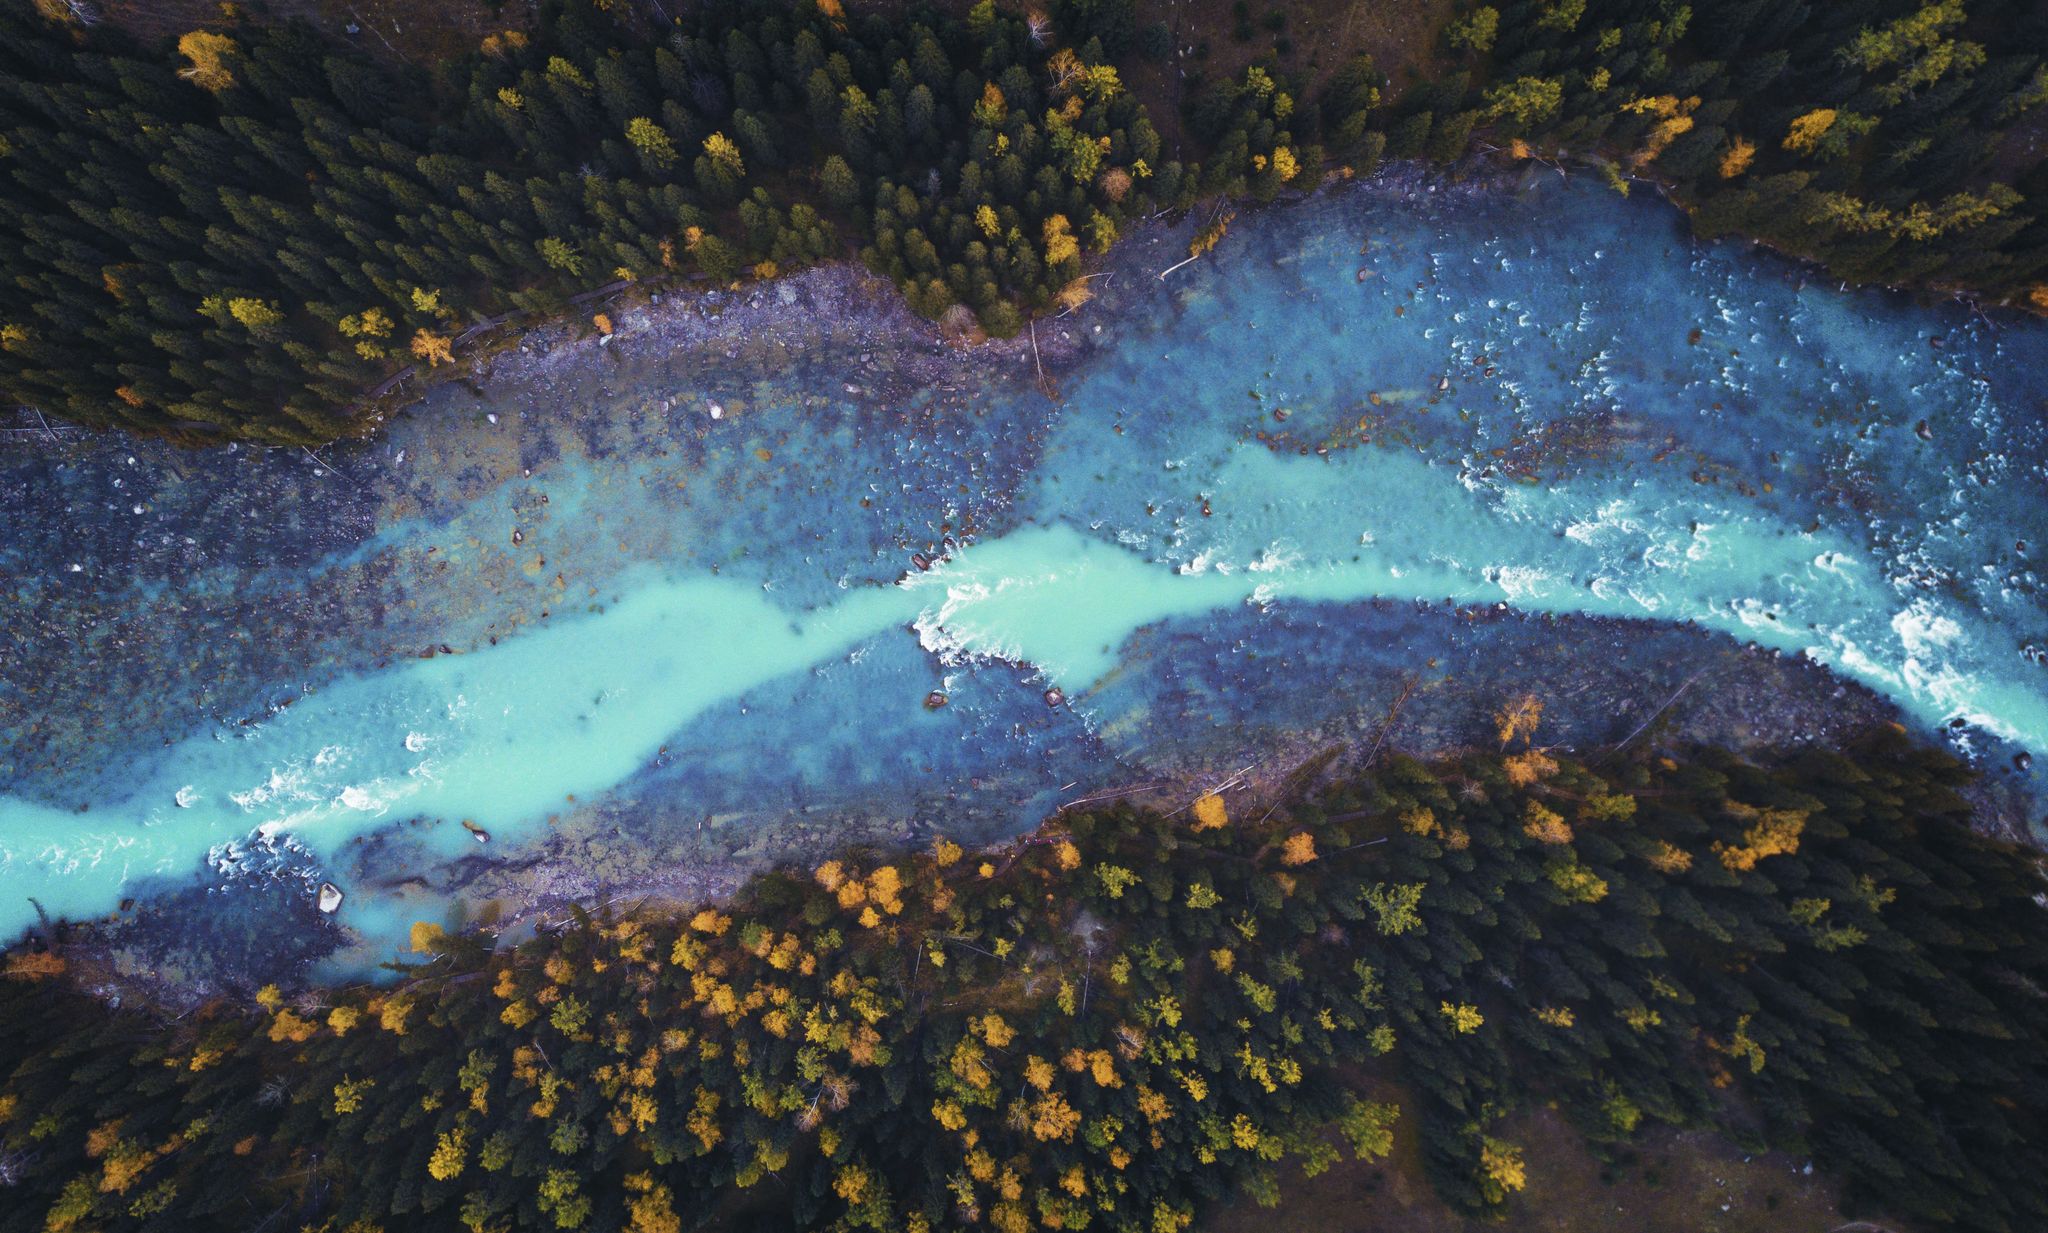 رود ایلی که از شمال غرب چین به سمت قزاقستان ادامه می‌یابد، در فصل‌های مختلف با وجود مواد معدنی داخل آب، رنگ‌های متفاوتی به خود میگیرید.